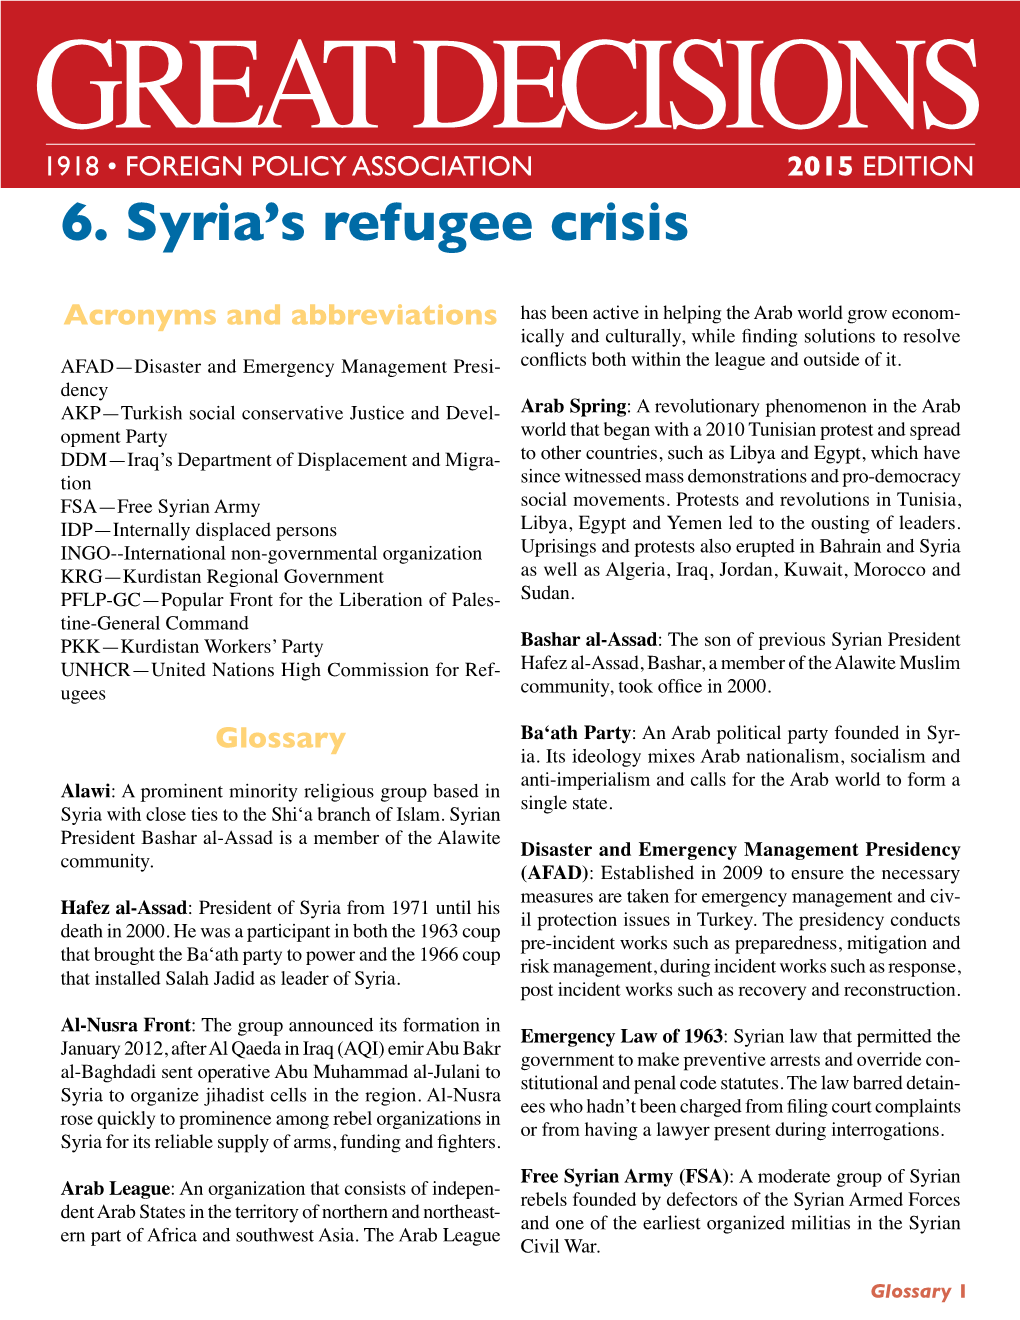 6. Syria's Refugee Crisis